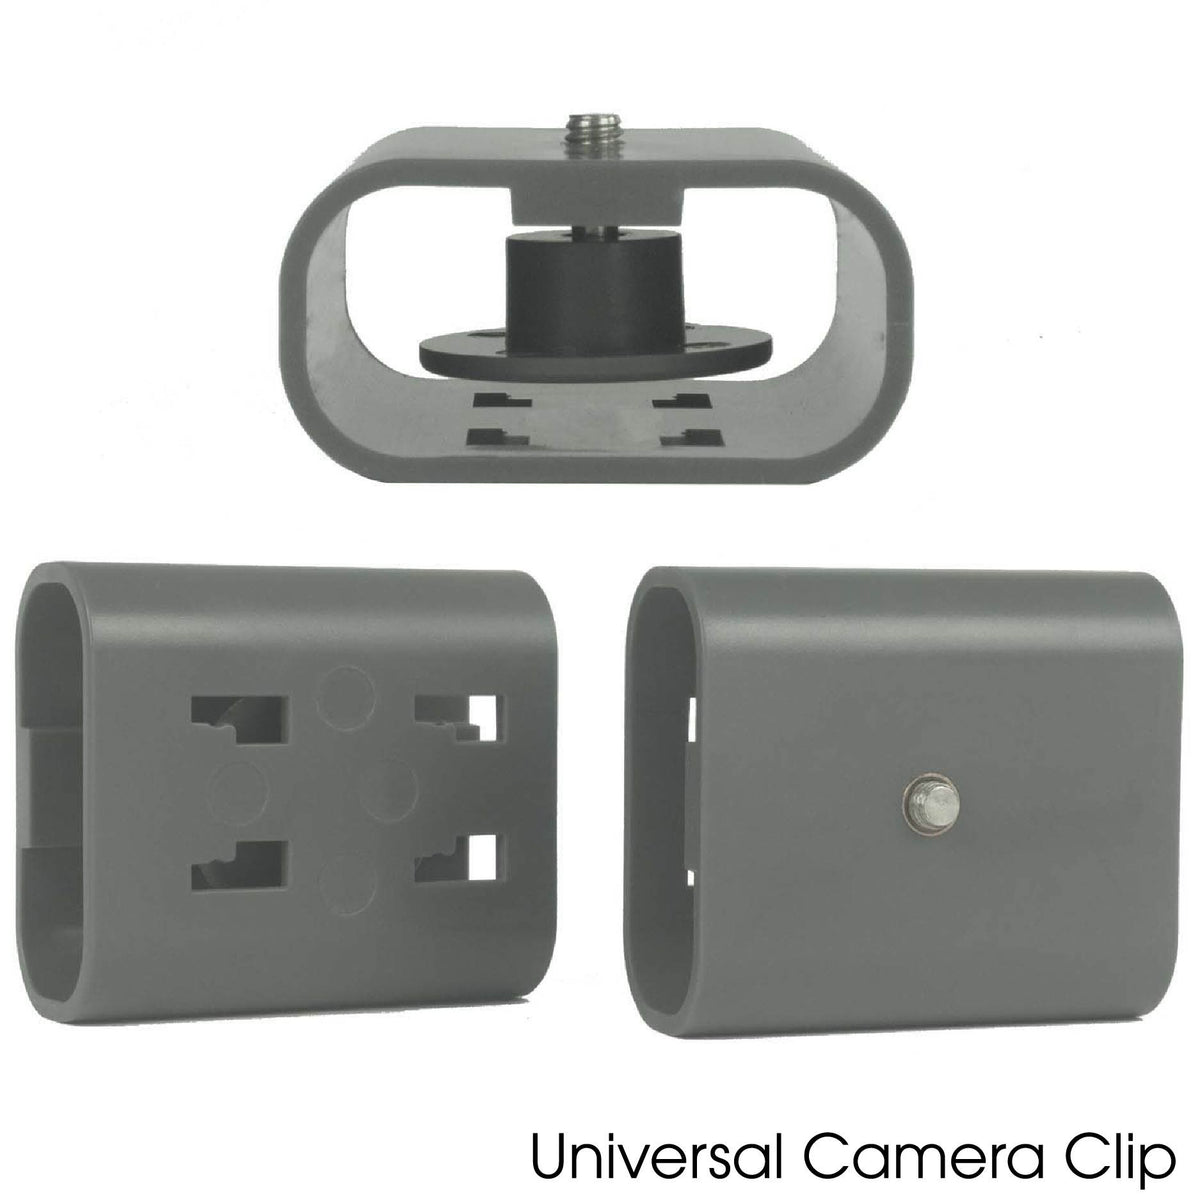 Universal Camera Clip